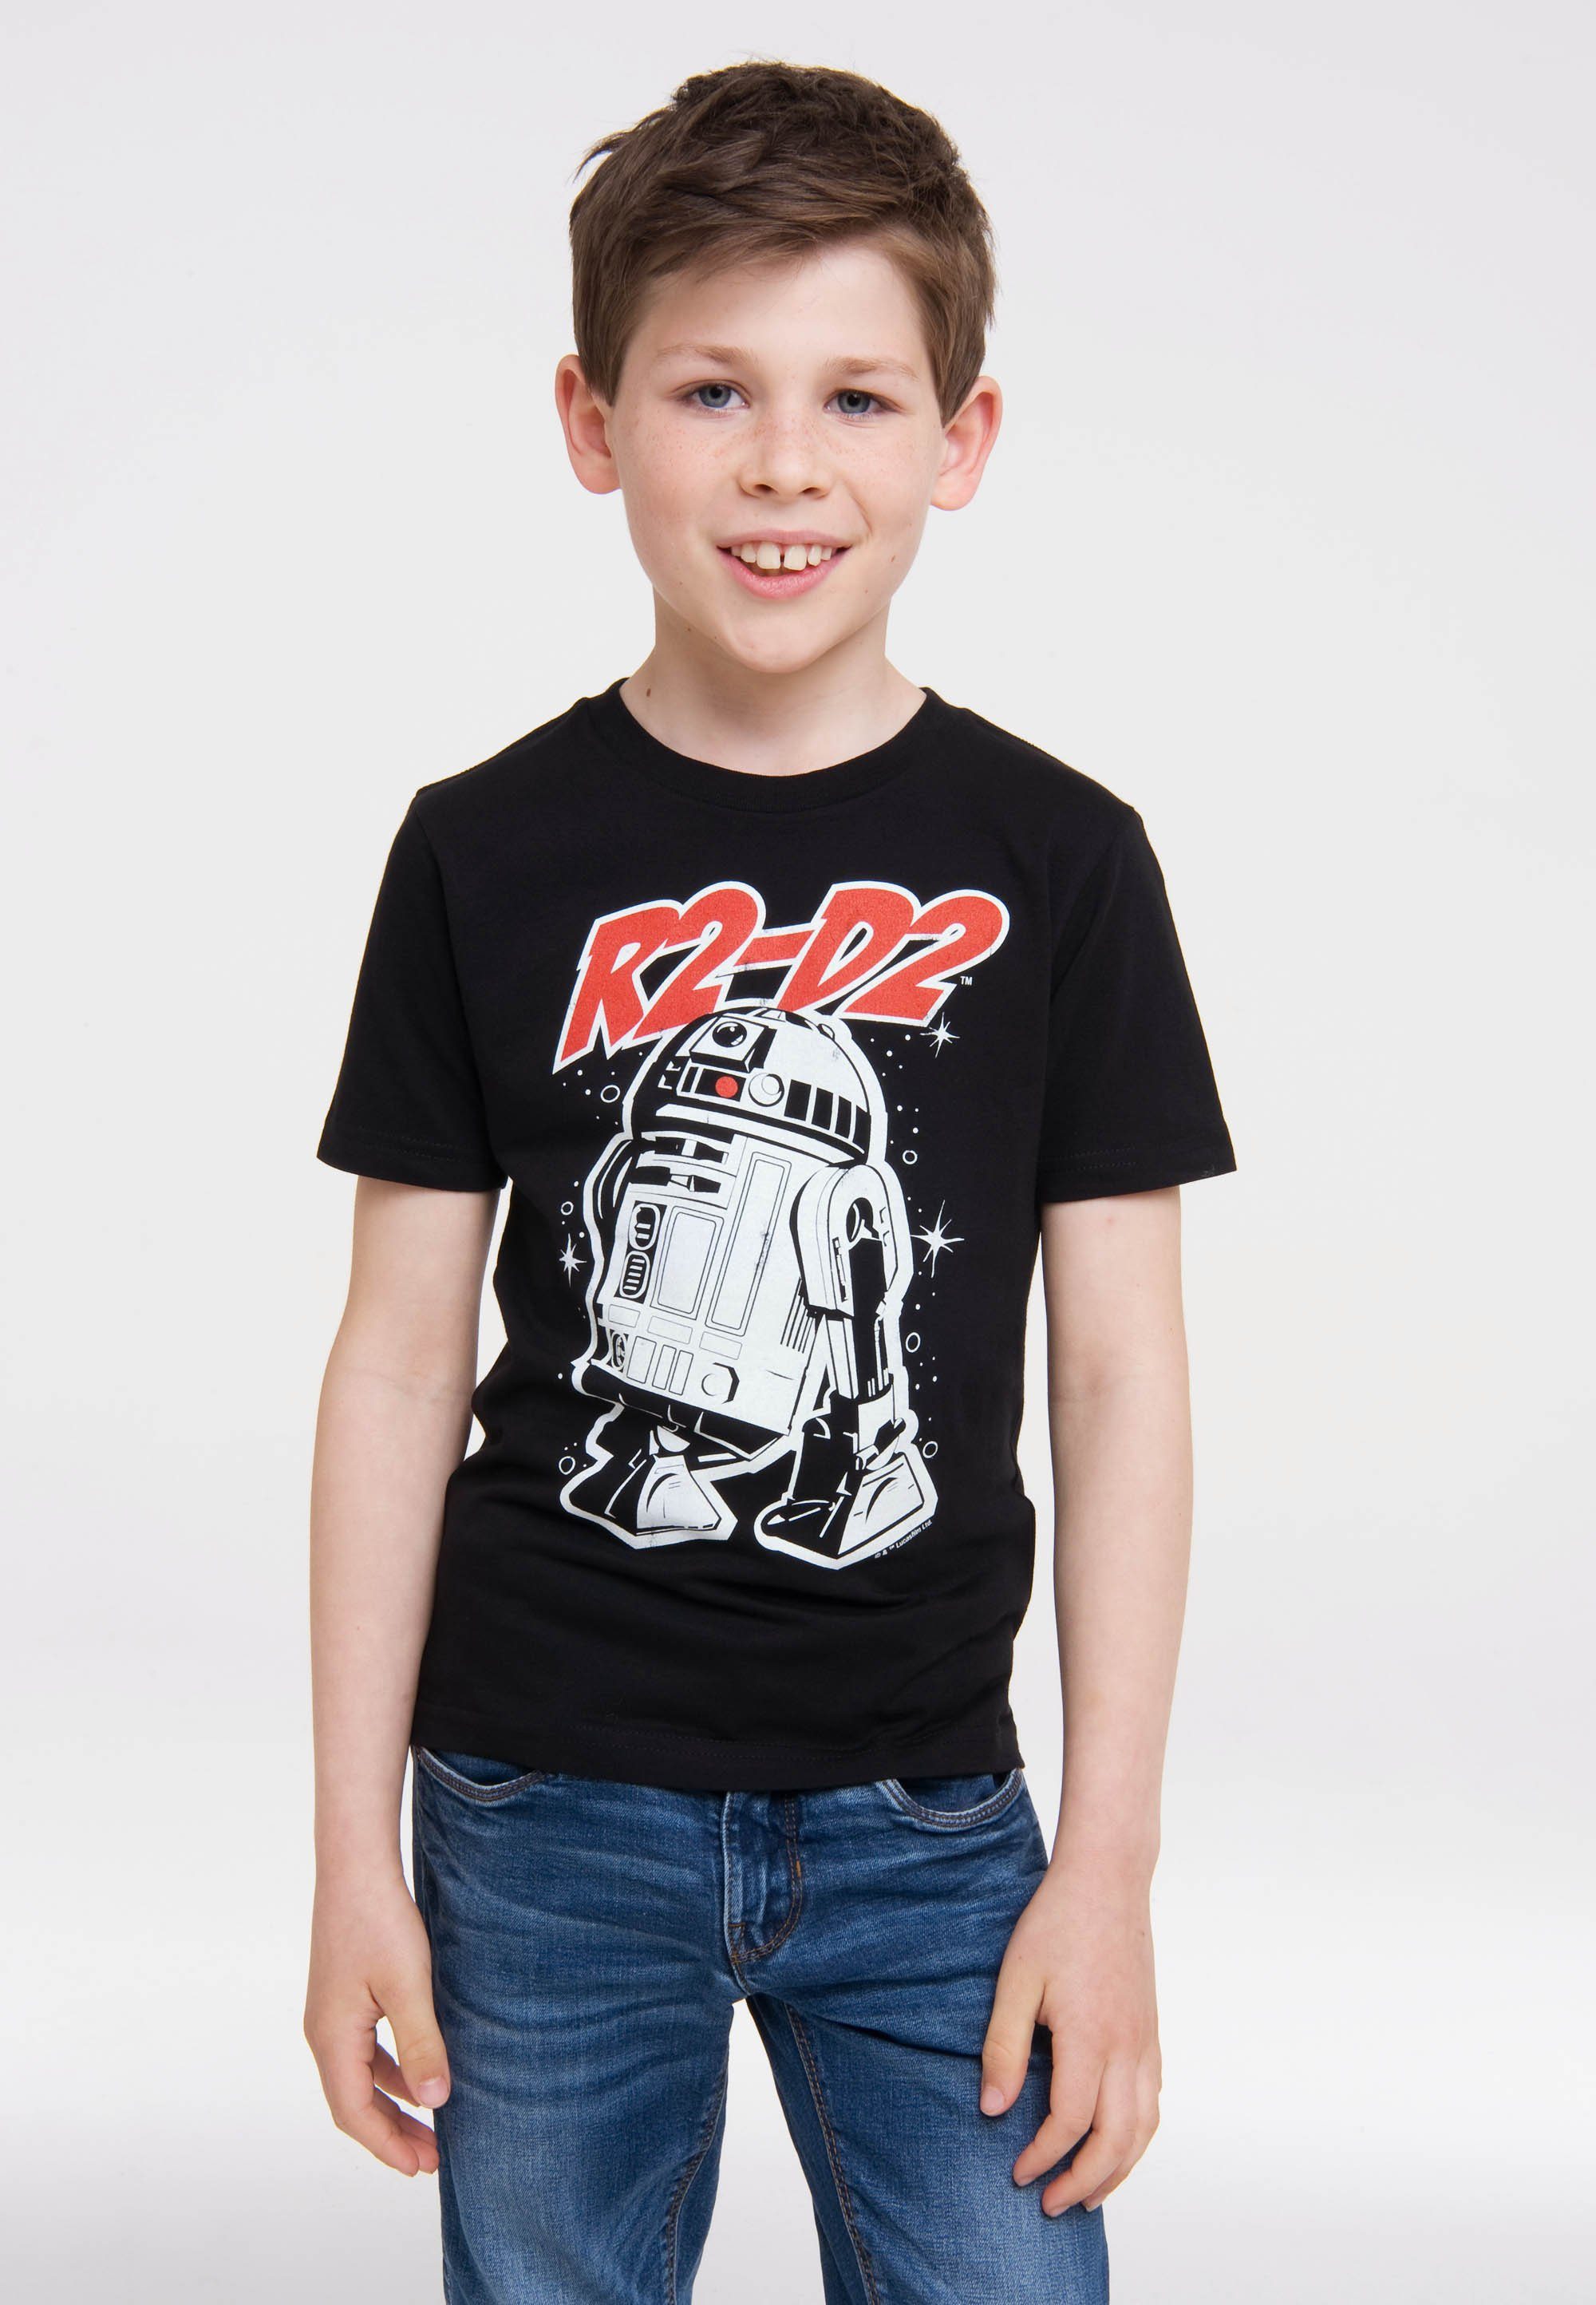 Originaldesign T-Shirt – Star lizenziertem mit R2-D2 LOGOSHIRT Wars